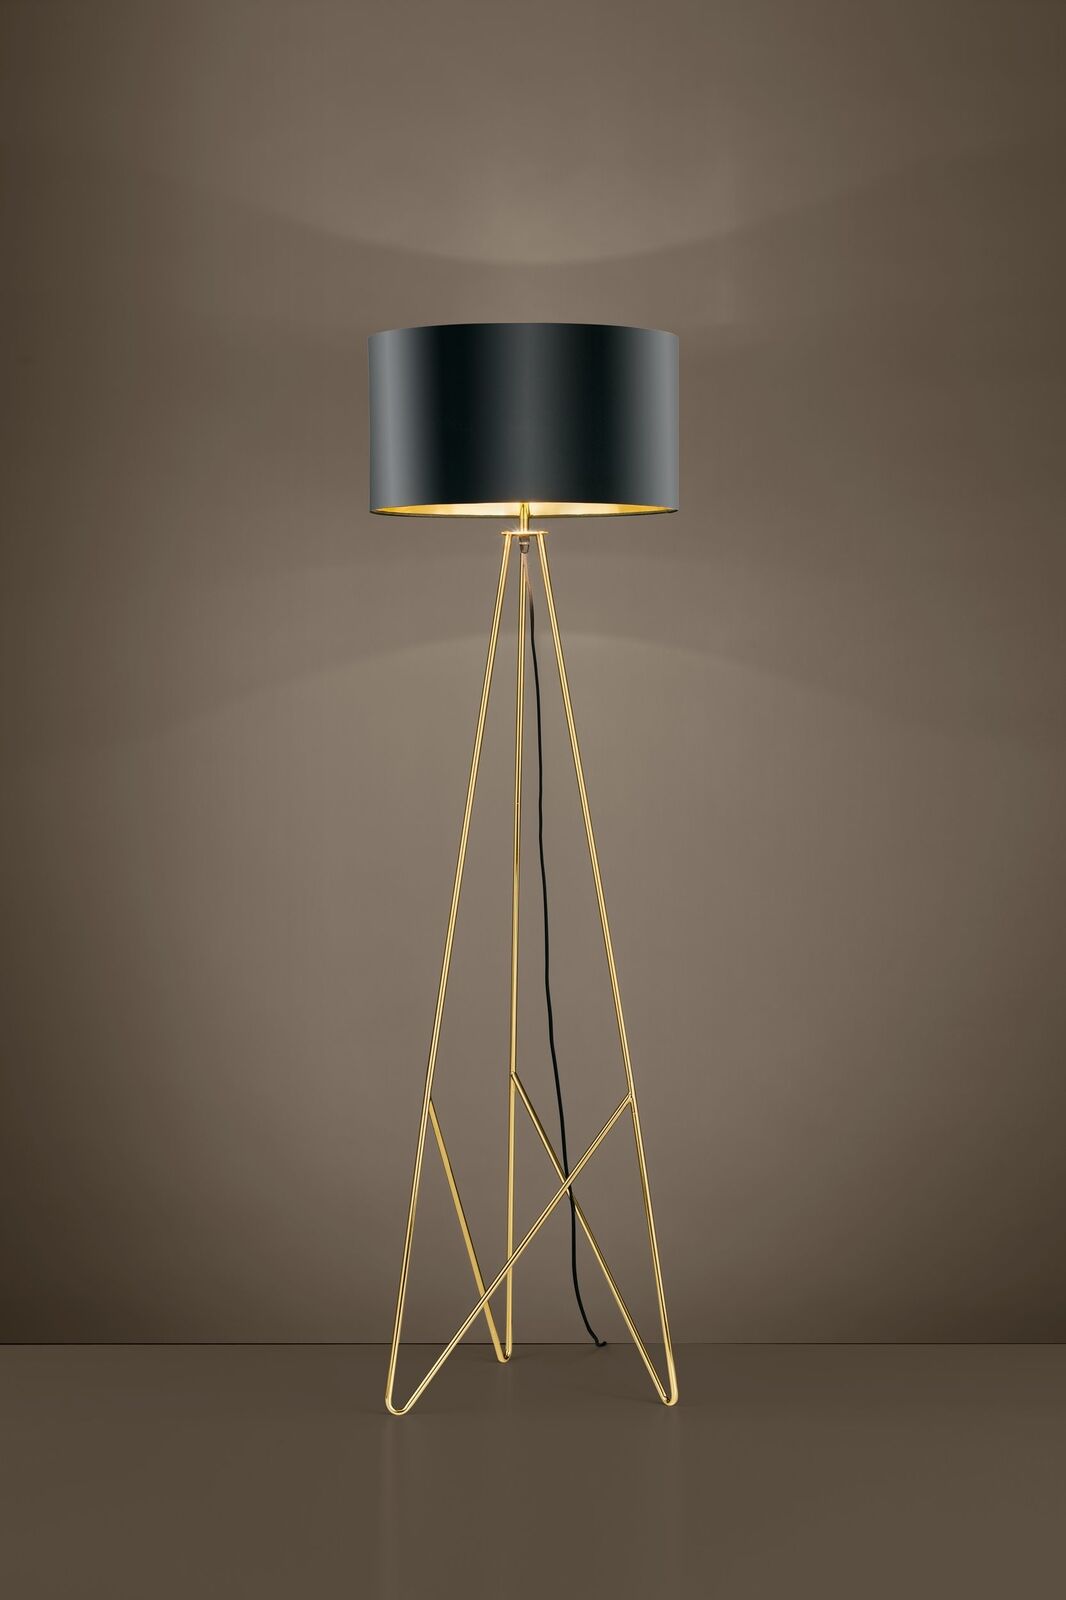 Stativ Stehlampe Lampe Wohnzimmer aus Metall und Stoff in schwarz und gold